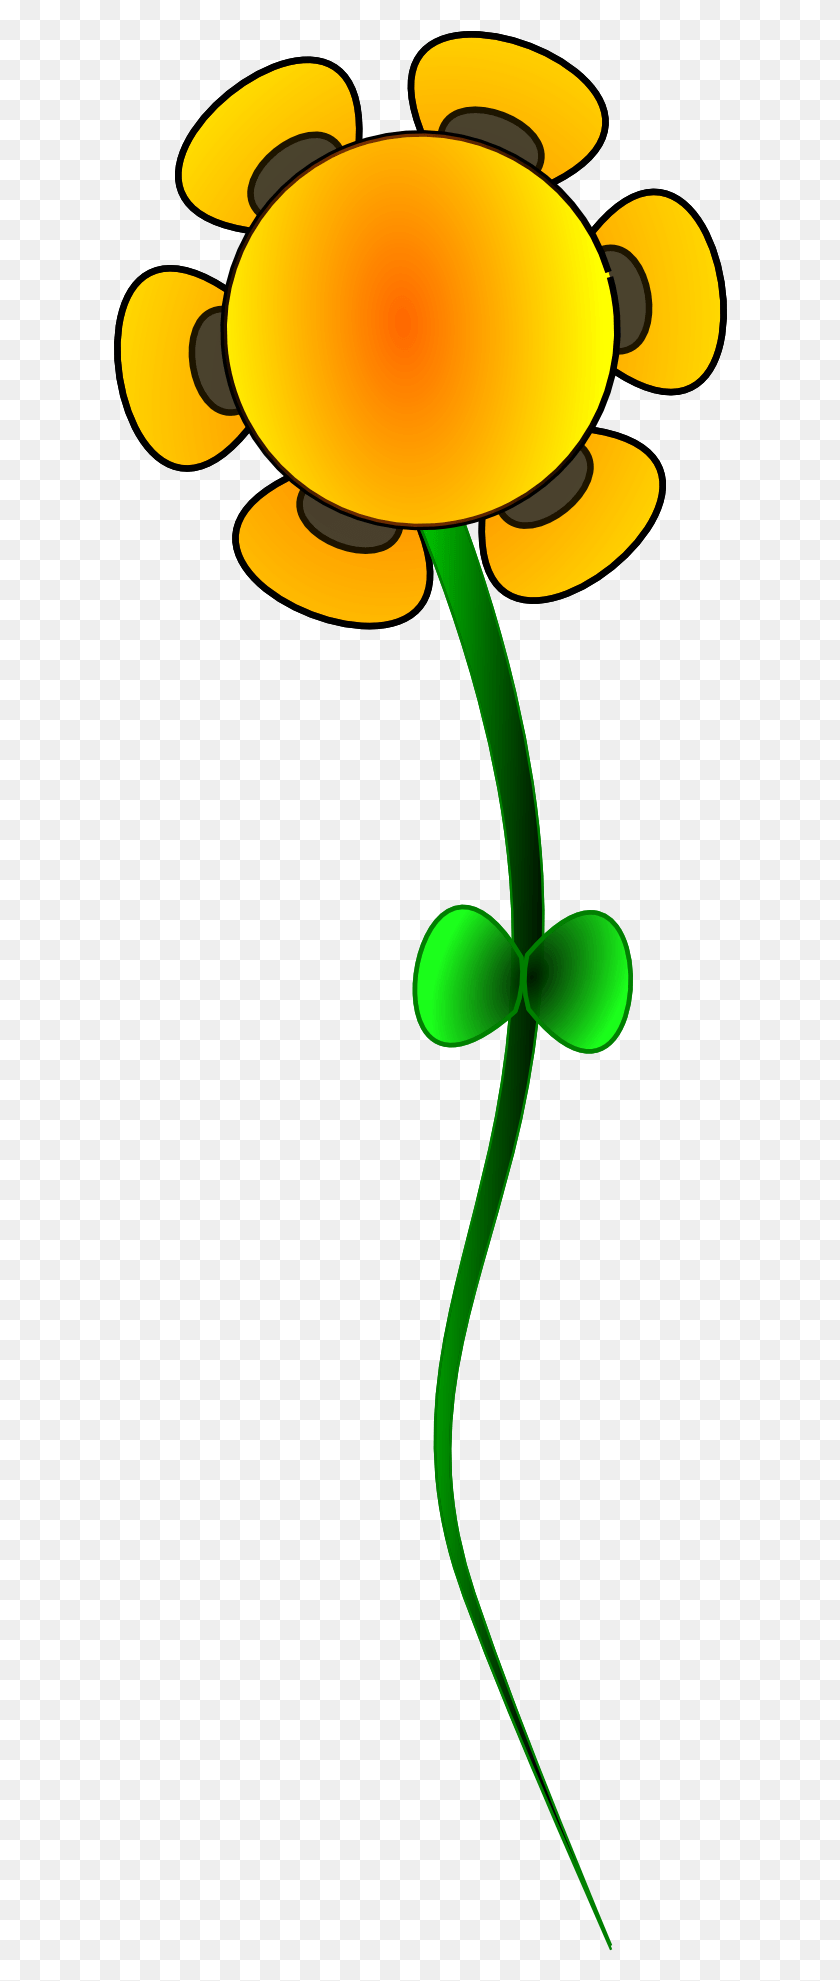 614x1921 Графический Рисунок Желтого Цветка Вектор Оранг Меганг Бунга, Зеленый, Растение, Лампа Hd Png Скачать